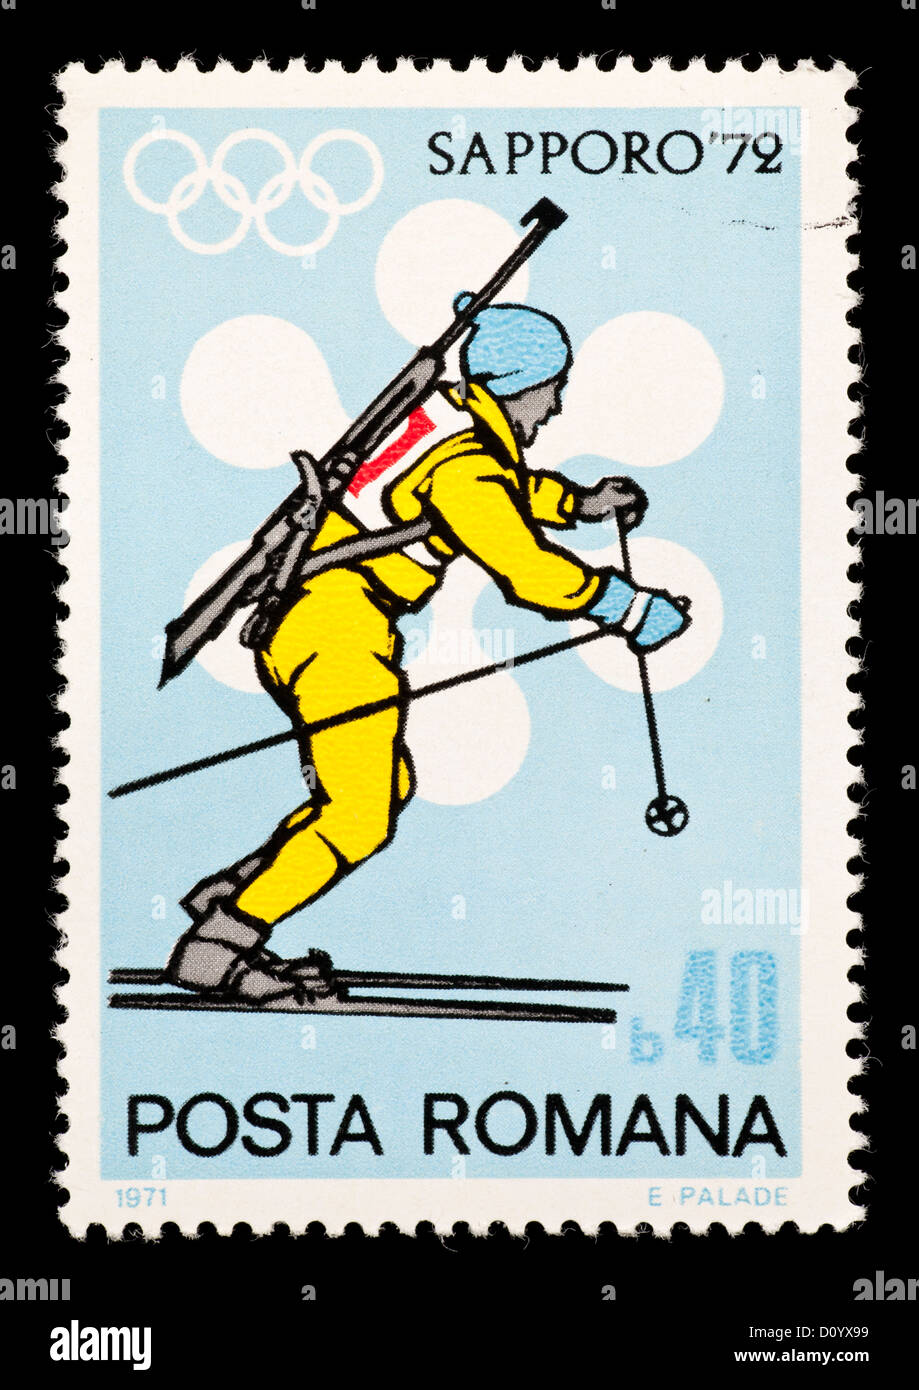 Francobollo dalla Romania raffigurante un concorrente di biathlon, rilasciati per le Olimpiadi Invernali del 1972 in Saporro, Giappone. Foto Stock